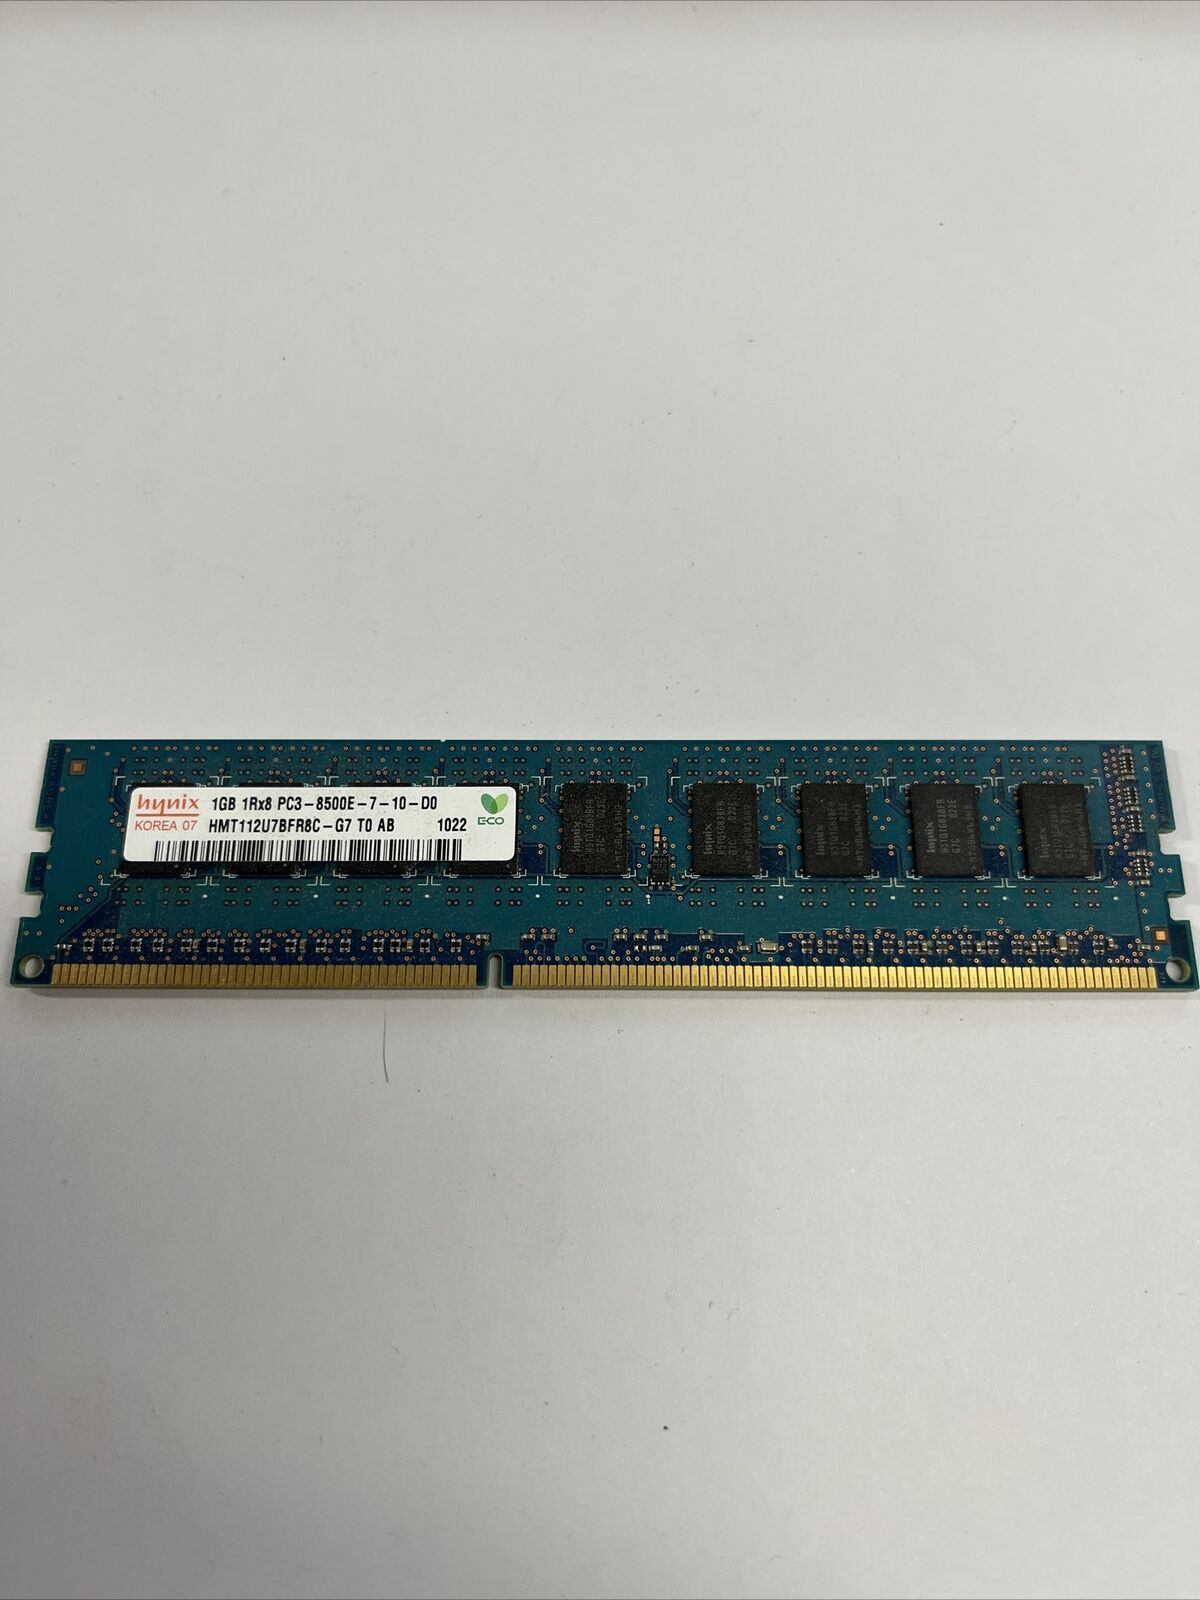 Hynix HMT112U7BFR8C-G7 1GB PC3-8500 DDR3-1066MHz ECC CL7 240-Pin DIMM Memory